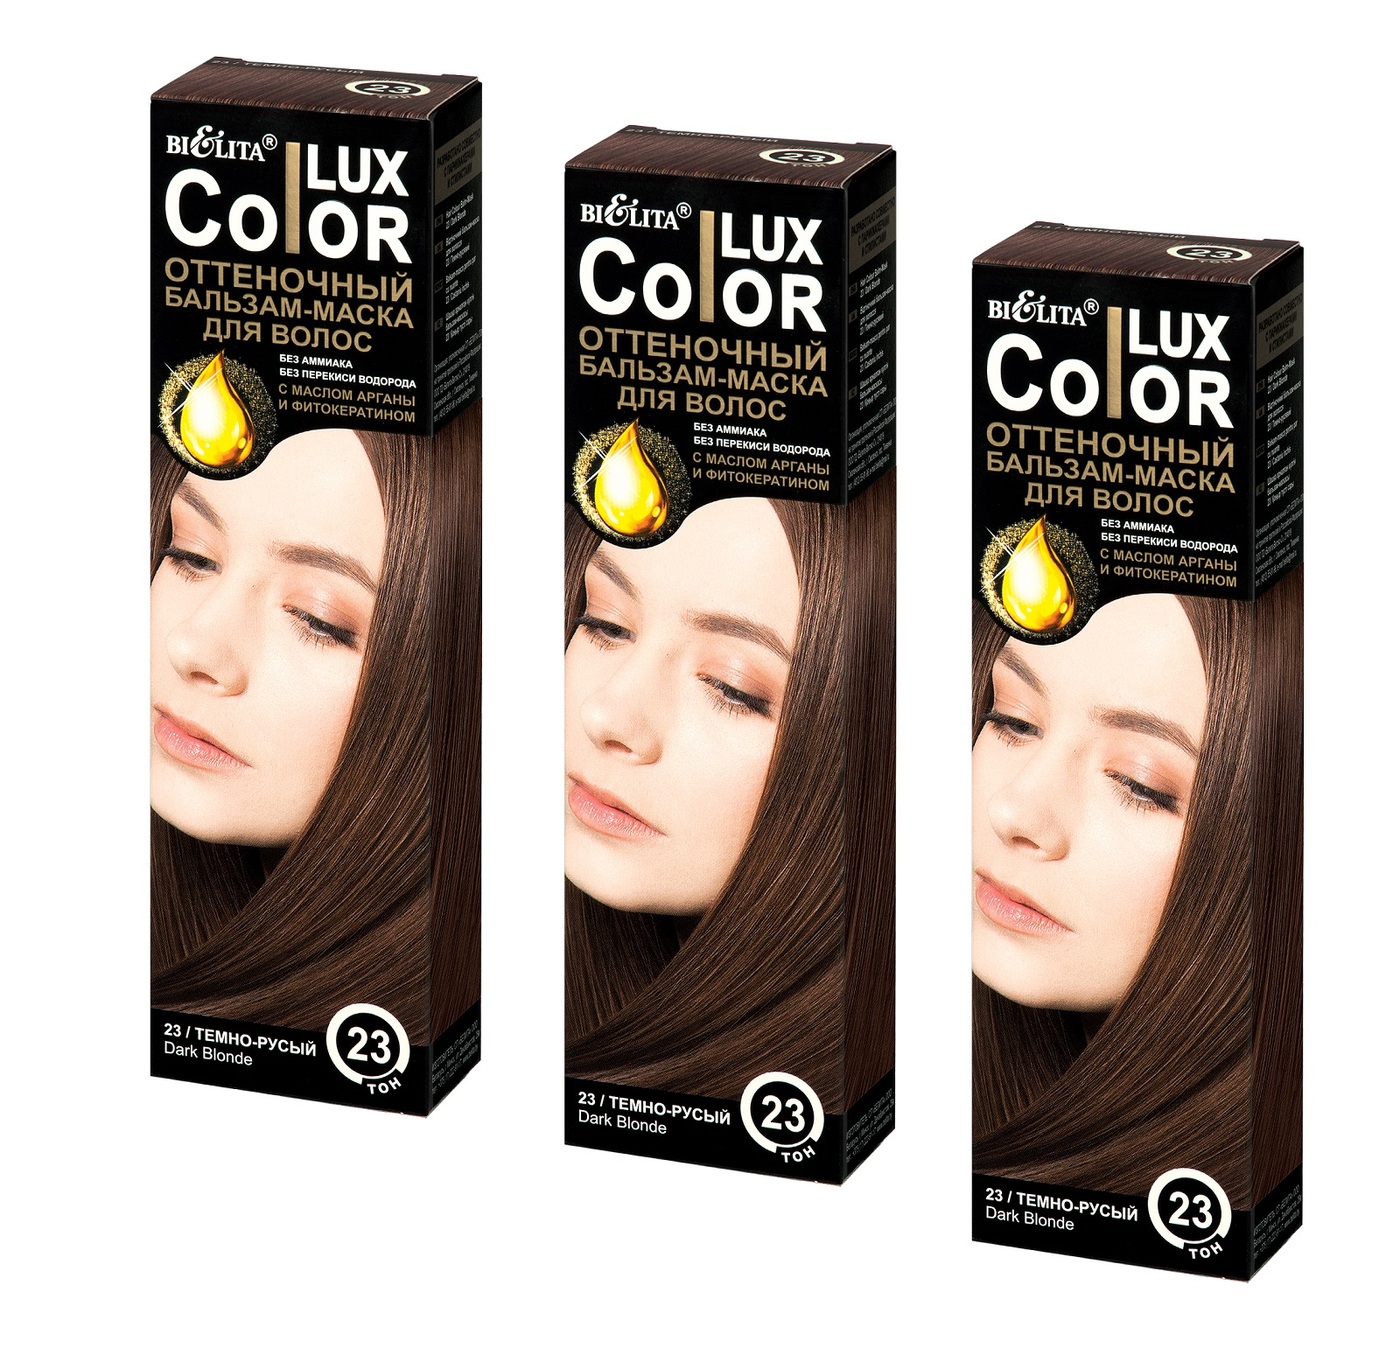 Оттеночный бальзам капус отзывы. Lux Color оттеночный бальзам палитра. Color Lux оттеночный шампунь. Оттеночный бальзам Белита Color Lux. Для волос "Color Lux".